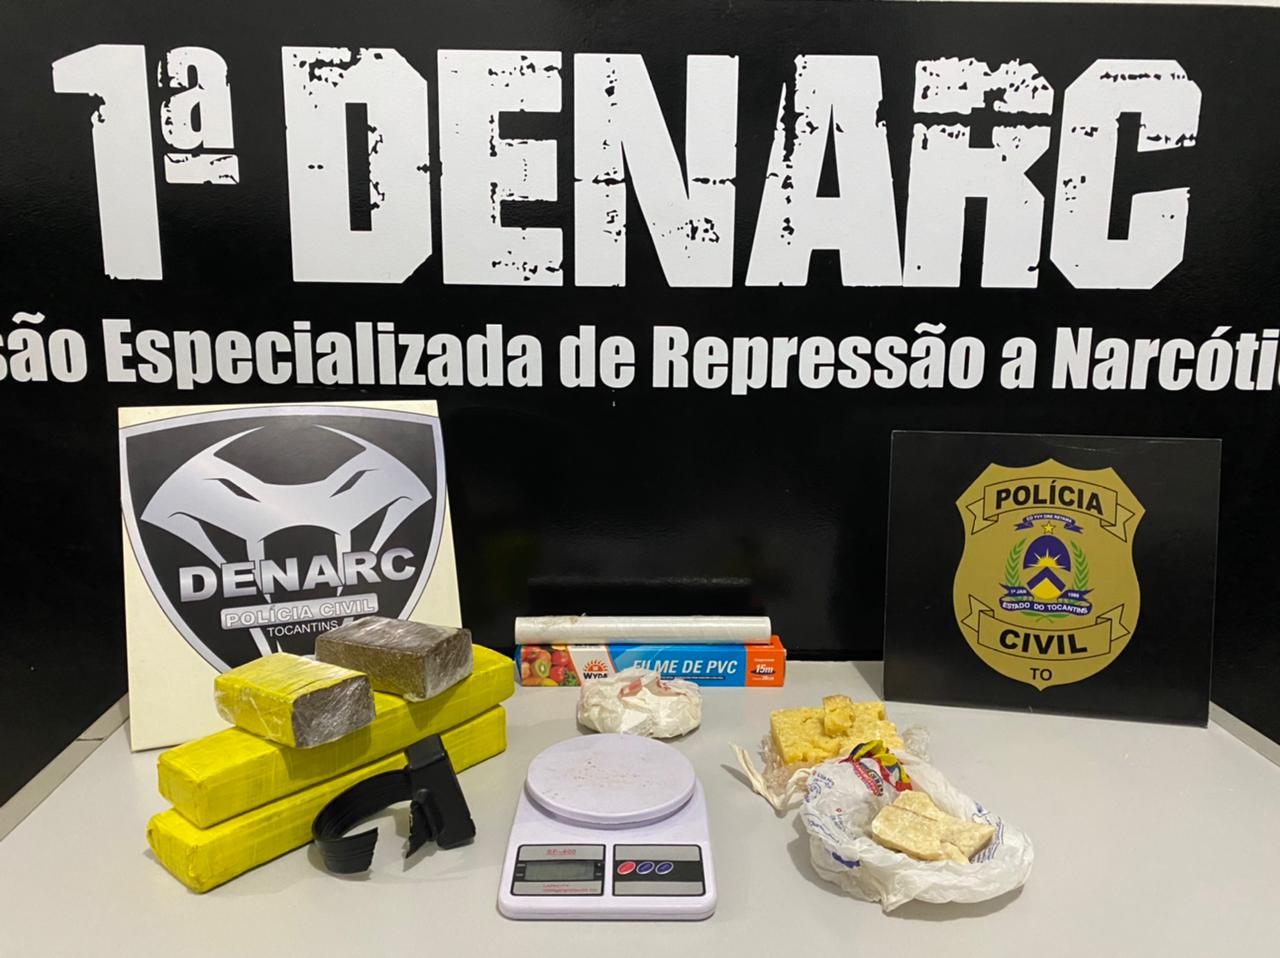 Foto: Divulgação/DICOM SSP TO 